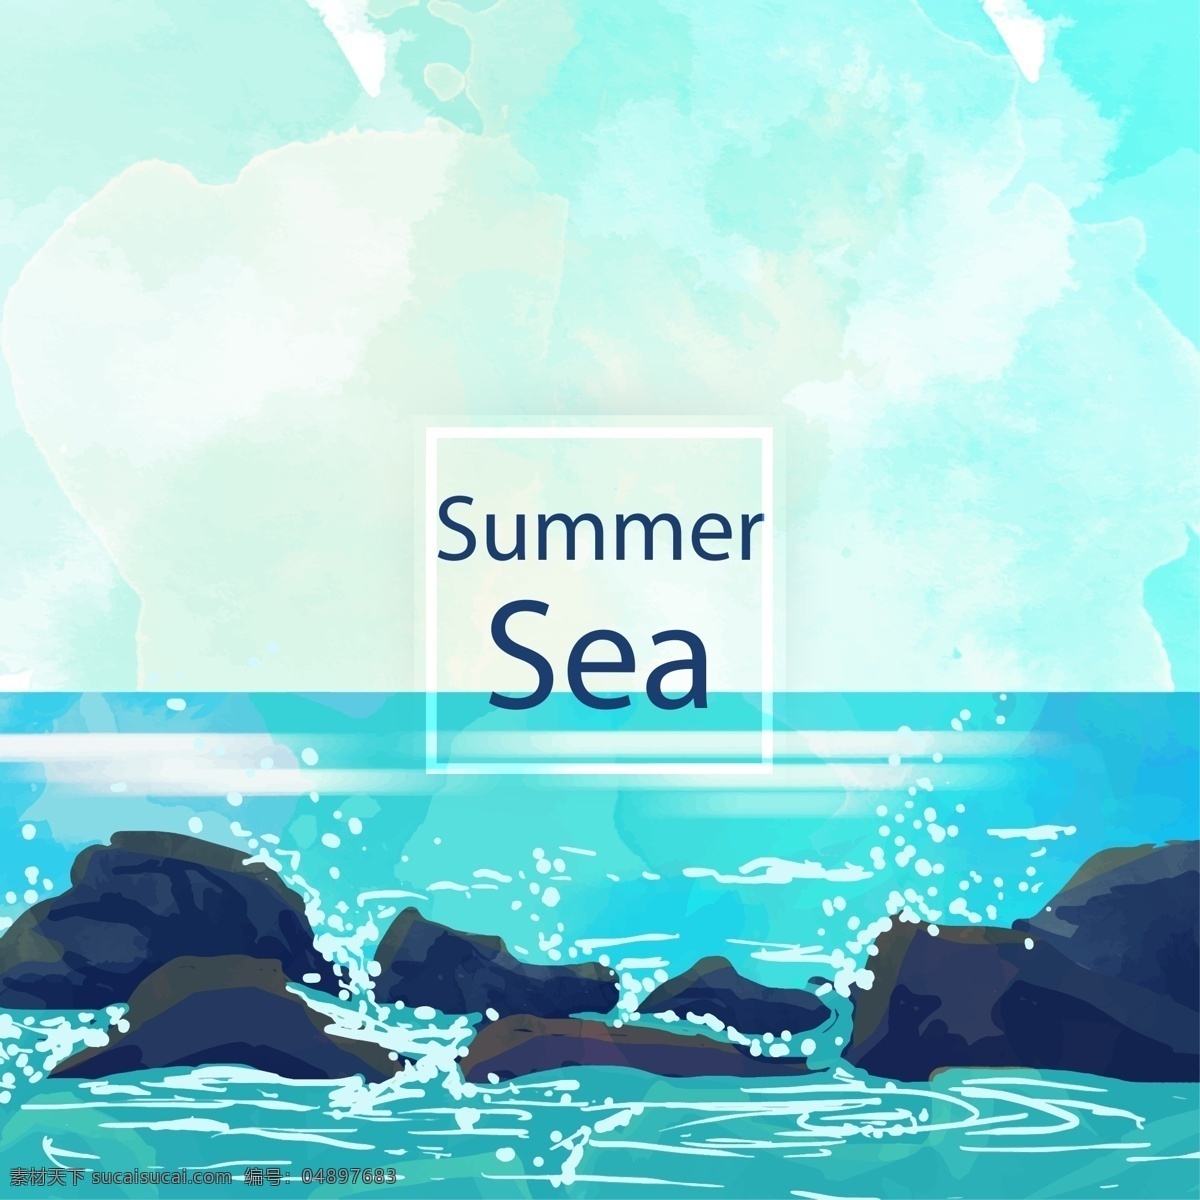 夏季 大海 礁石 风景 矢量 海浪 动漫动画 风景漫画